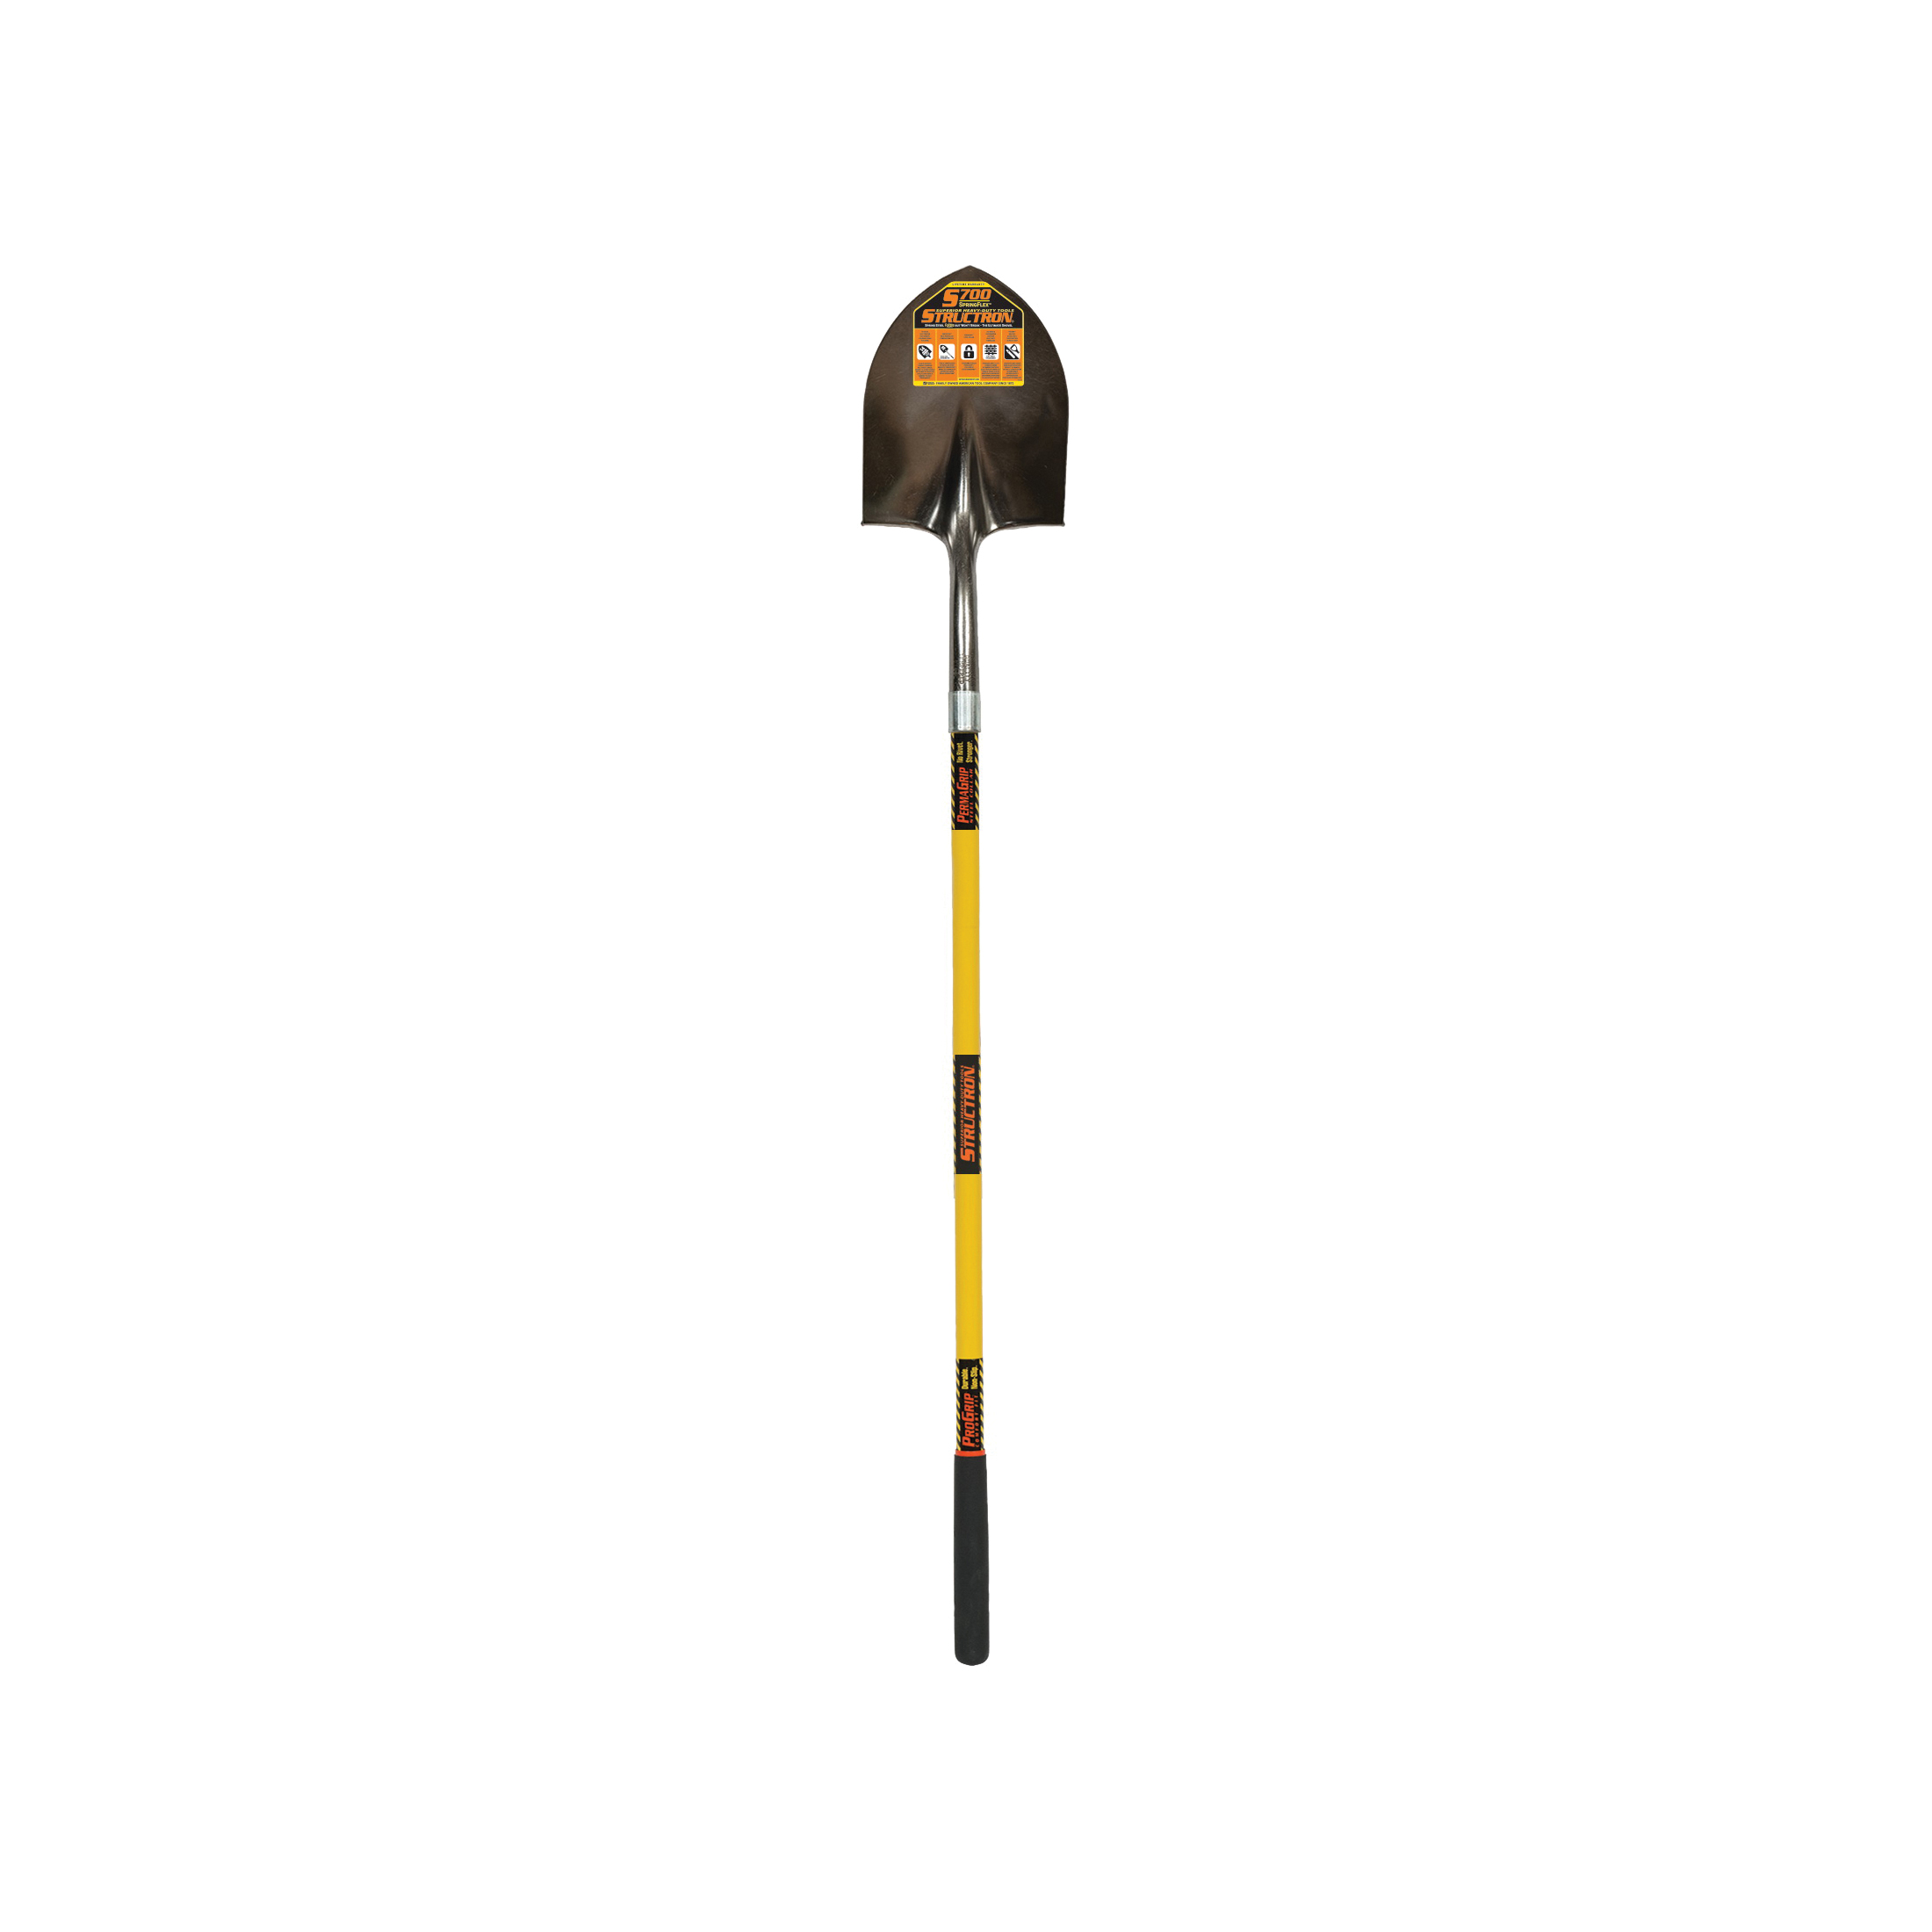 S700 SpringFlex 49730 Shovel, 9-1/2 in W Blade, 14 ga Gauge, Steel Blade, Fiberglass Handle, Long Handle